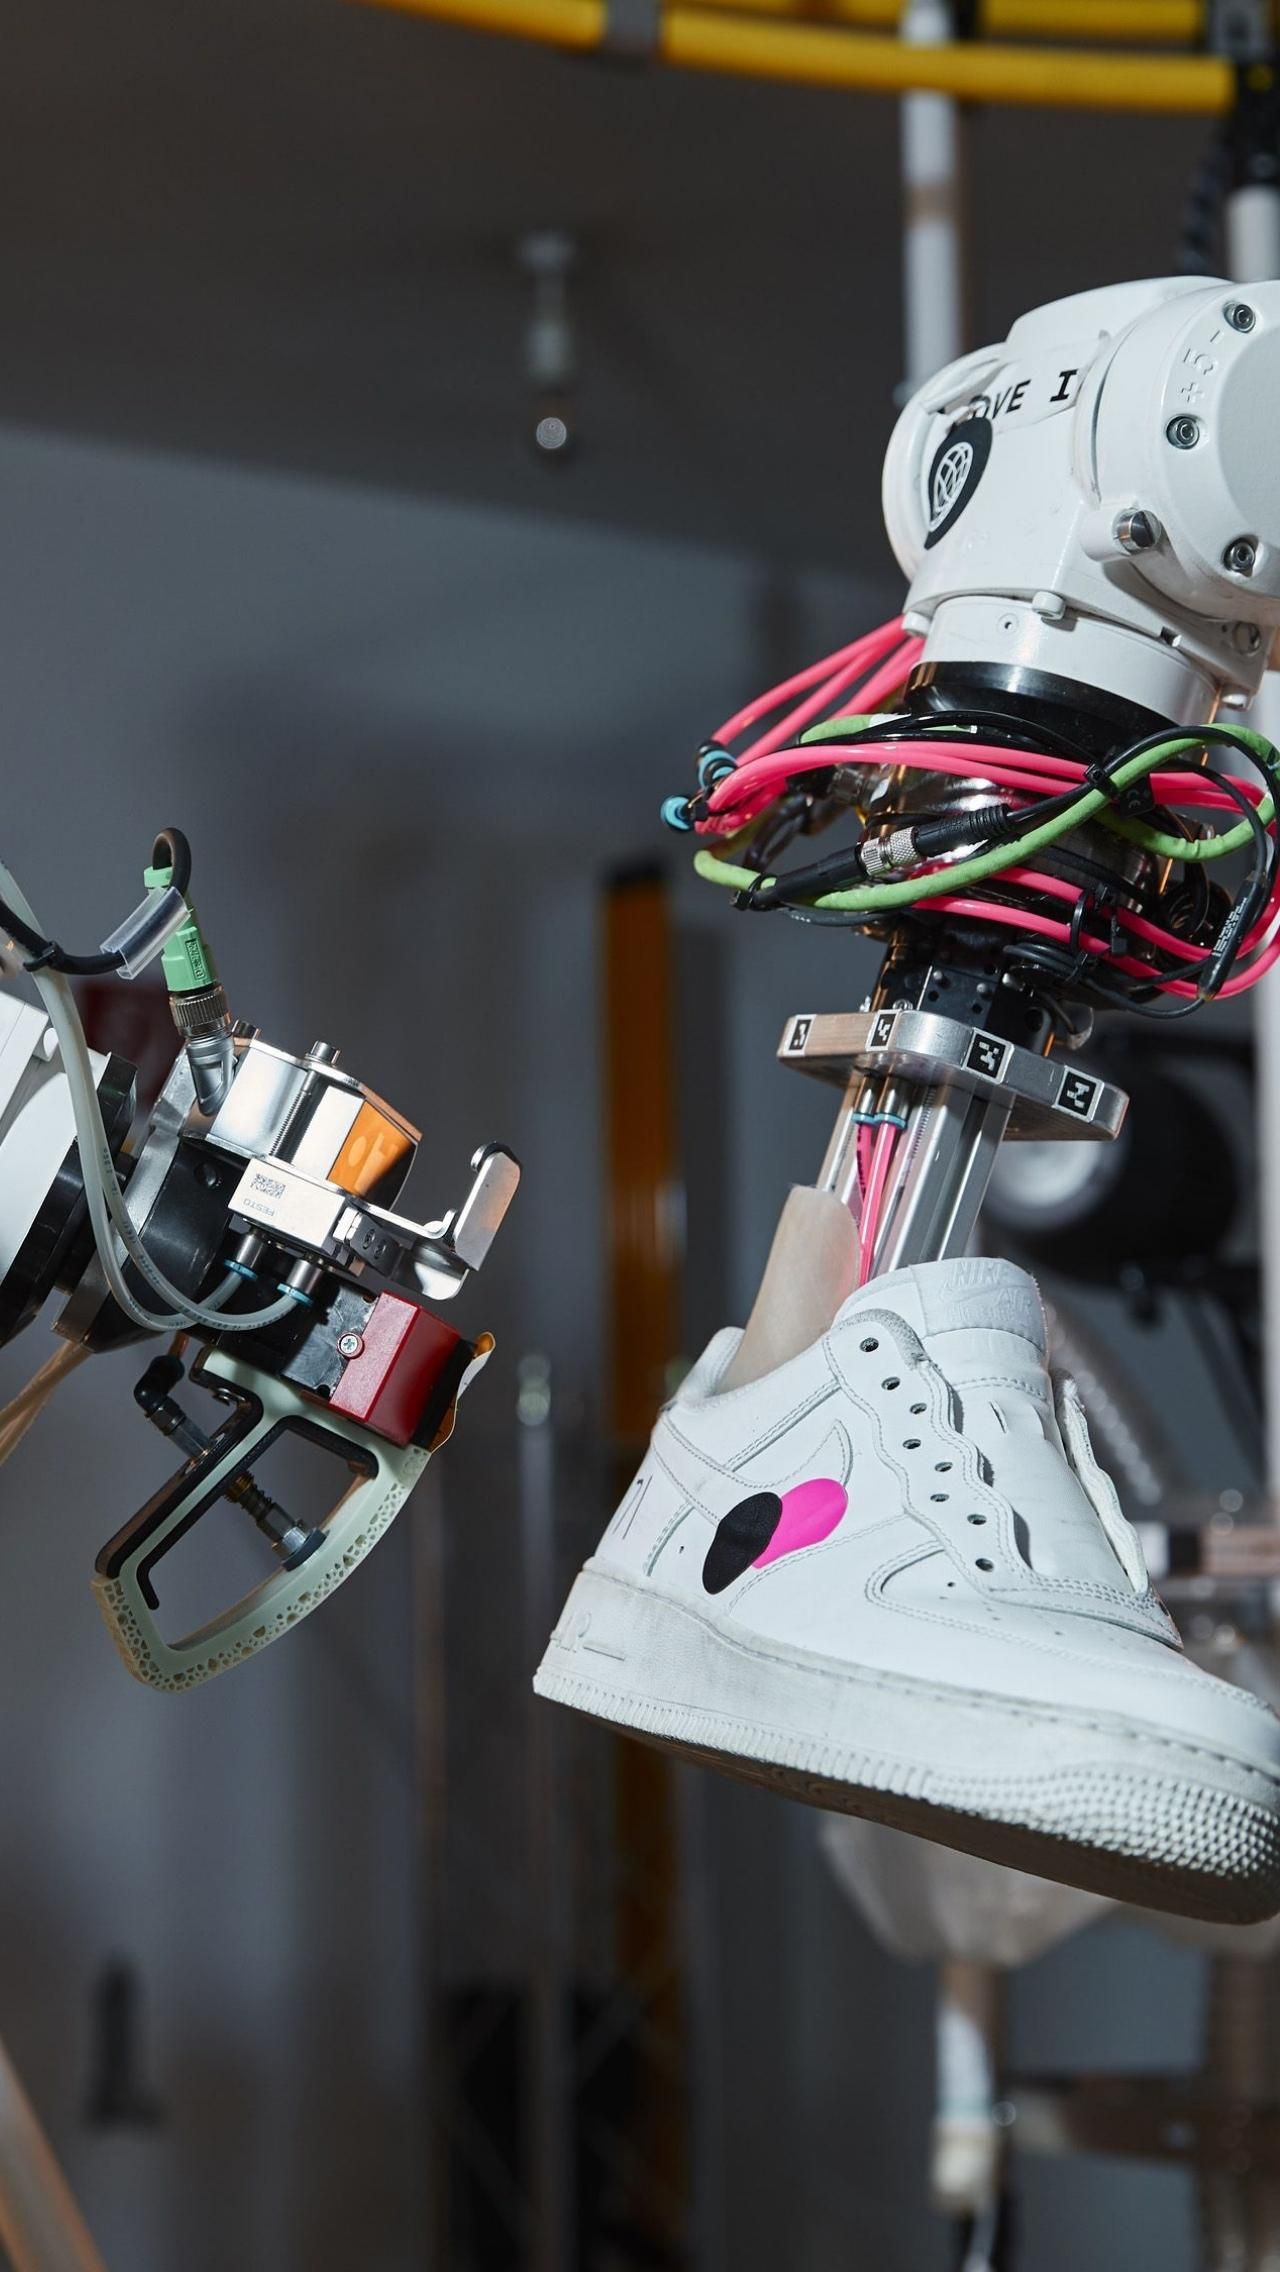 Система получила название BILL — аббревиатура от Bot Initiated Longevity Lab. Проект призван уменьшить влияние производства обуви на окружающую среду.